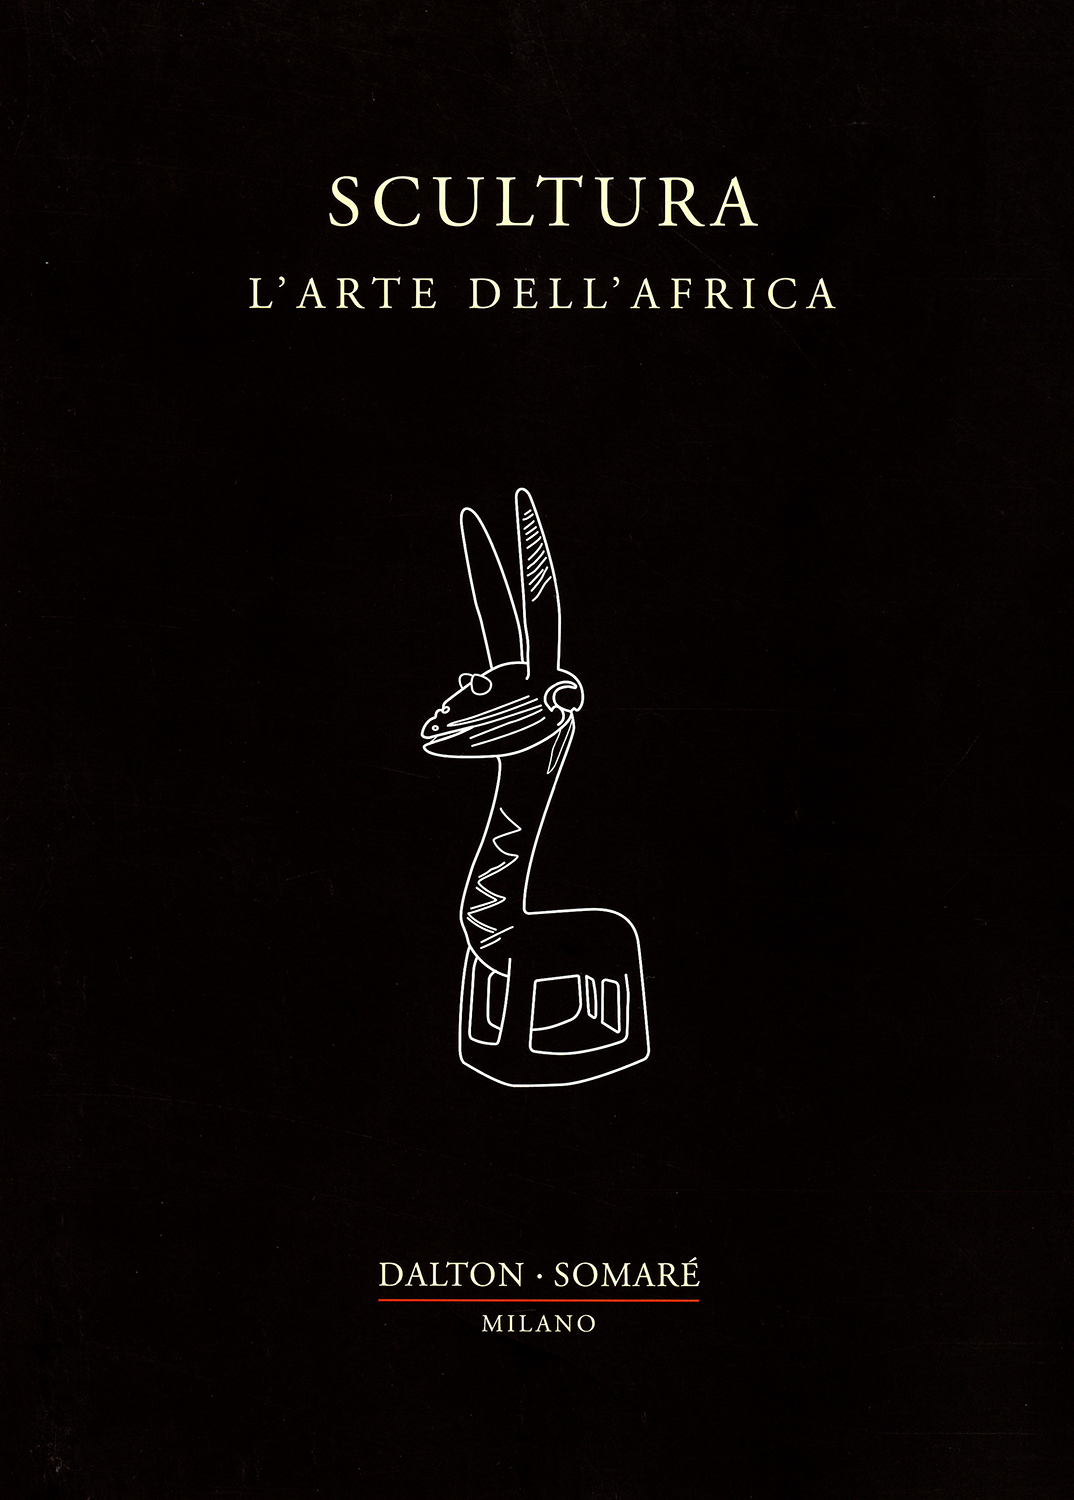 Catalogo Scultura - L'Arte dell'Africa a cura della Galleria Dalton Somaré